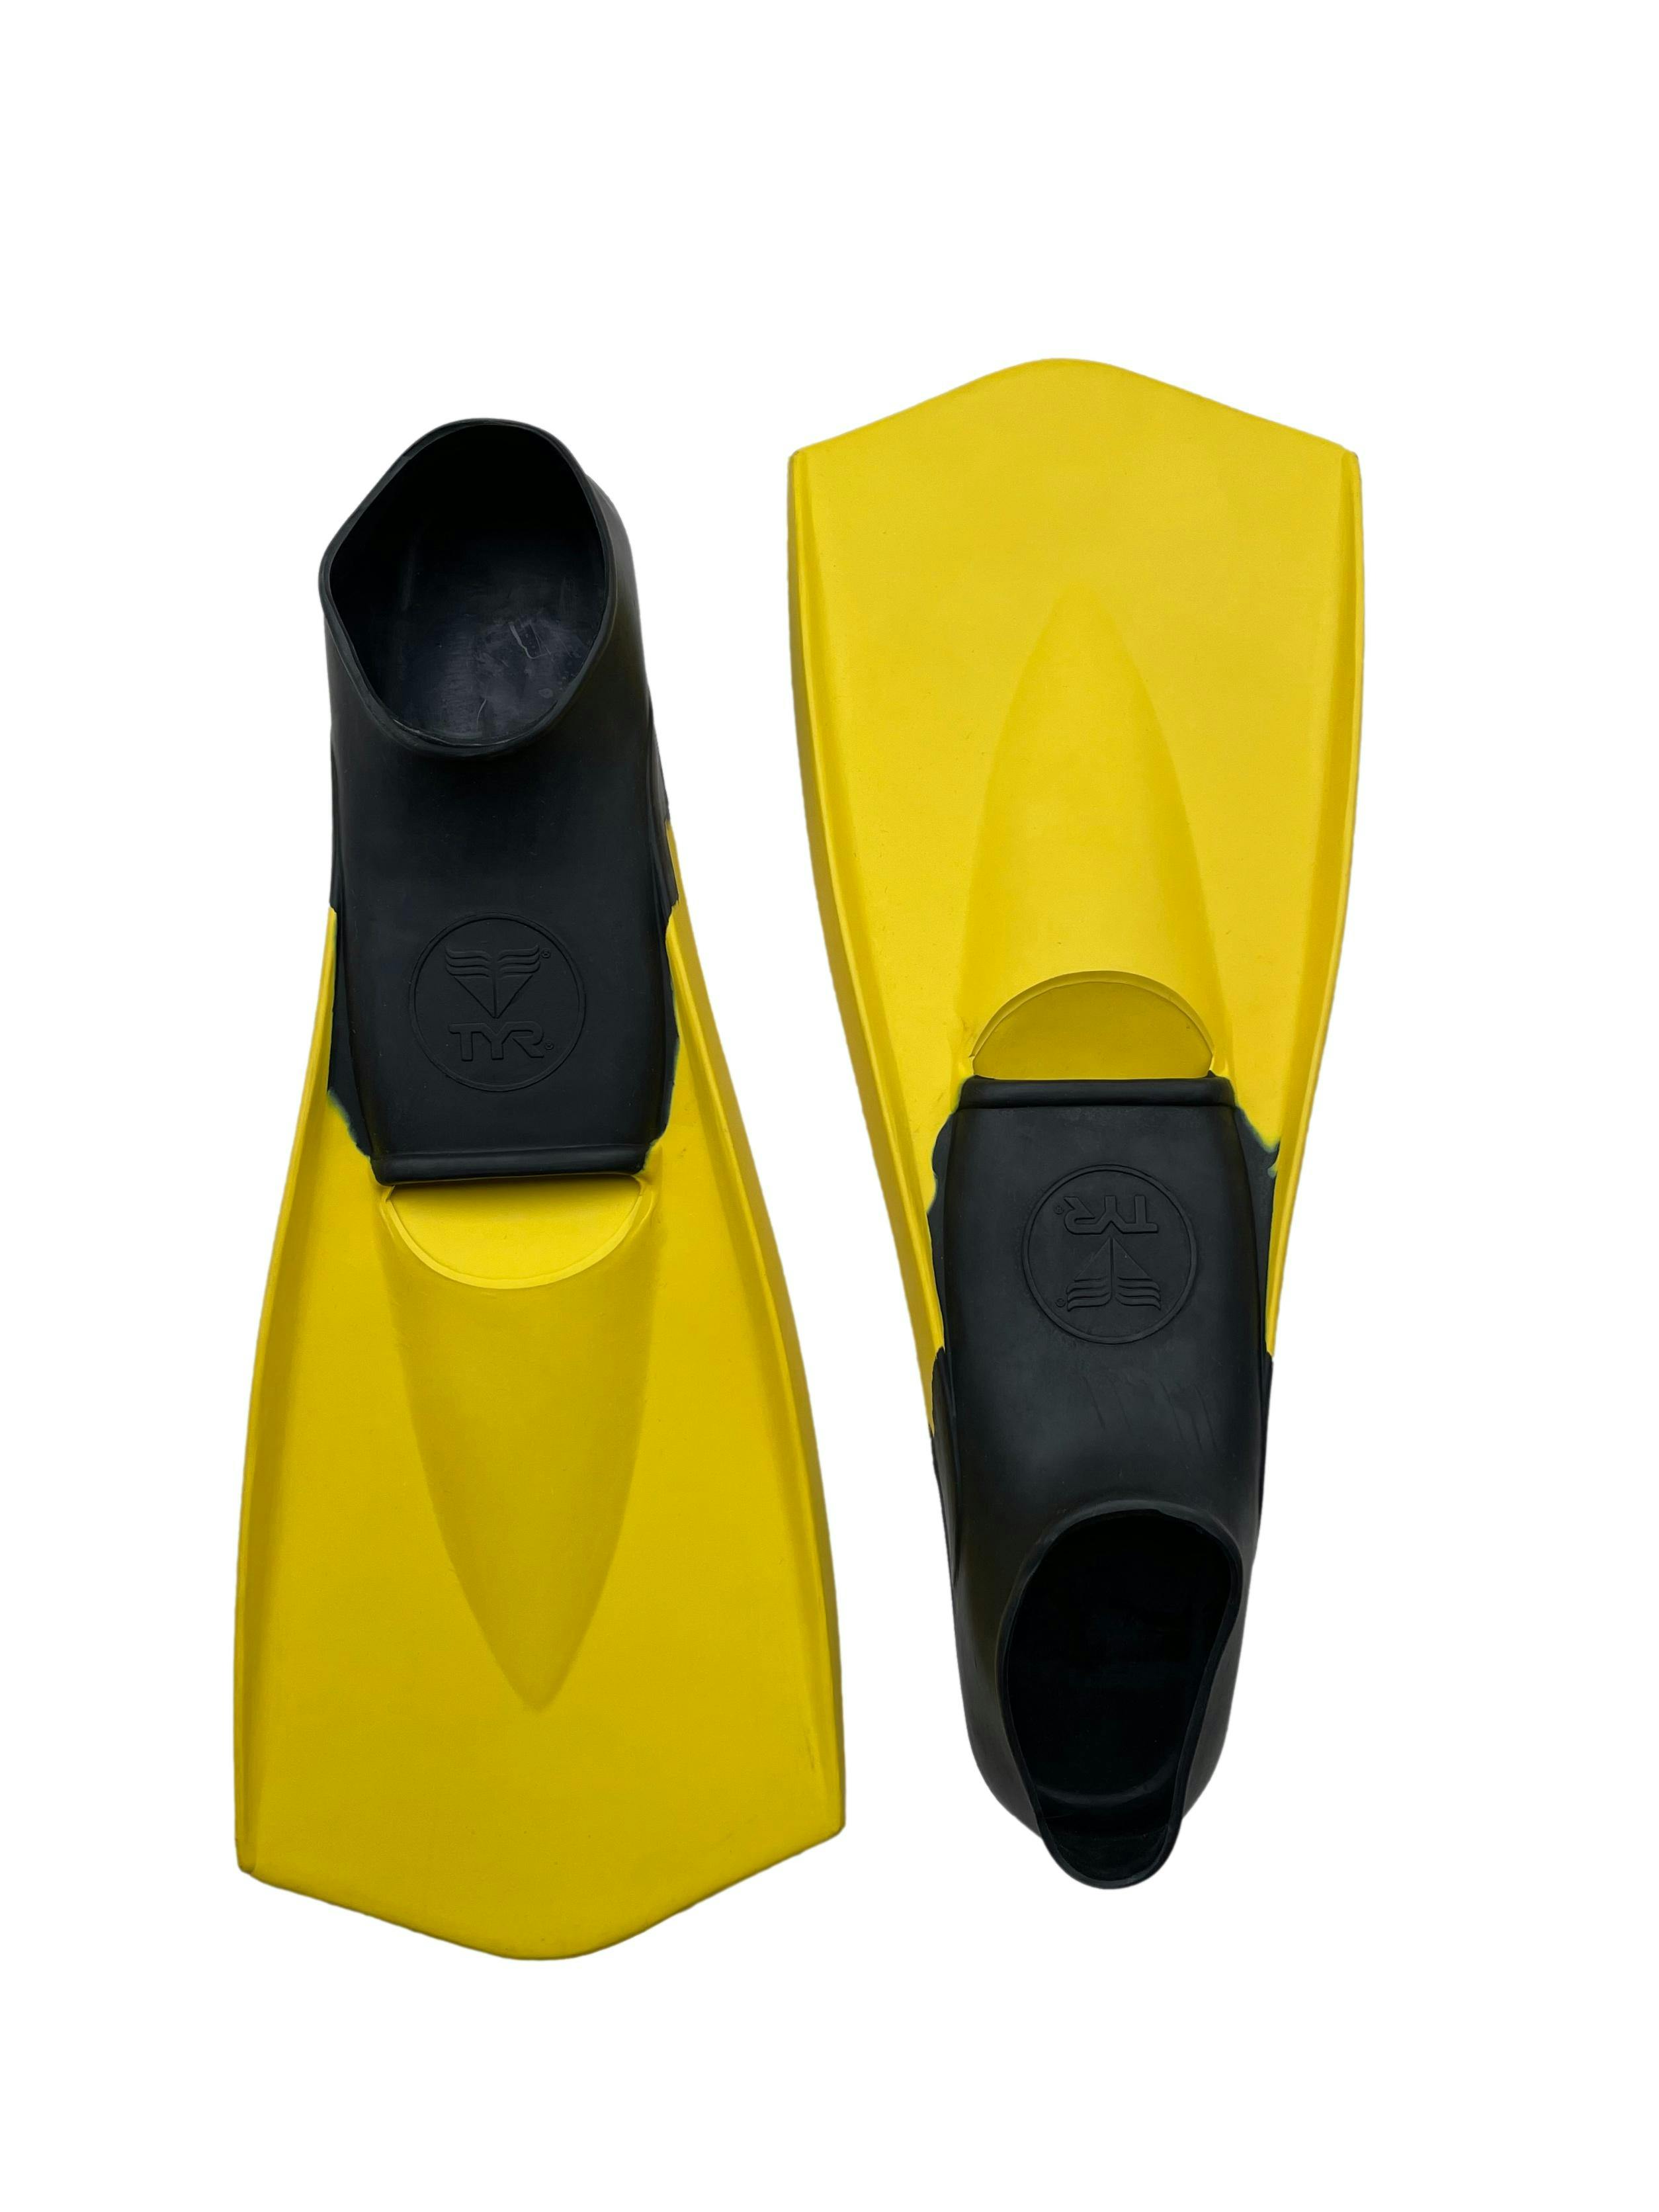 Aletas Flexin2.0 TYR en negro y amarillo,100% caucho natural, para trabajar piernas y velocidad. Como nuevas.